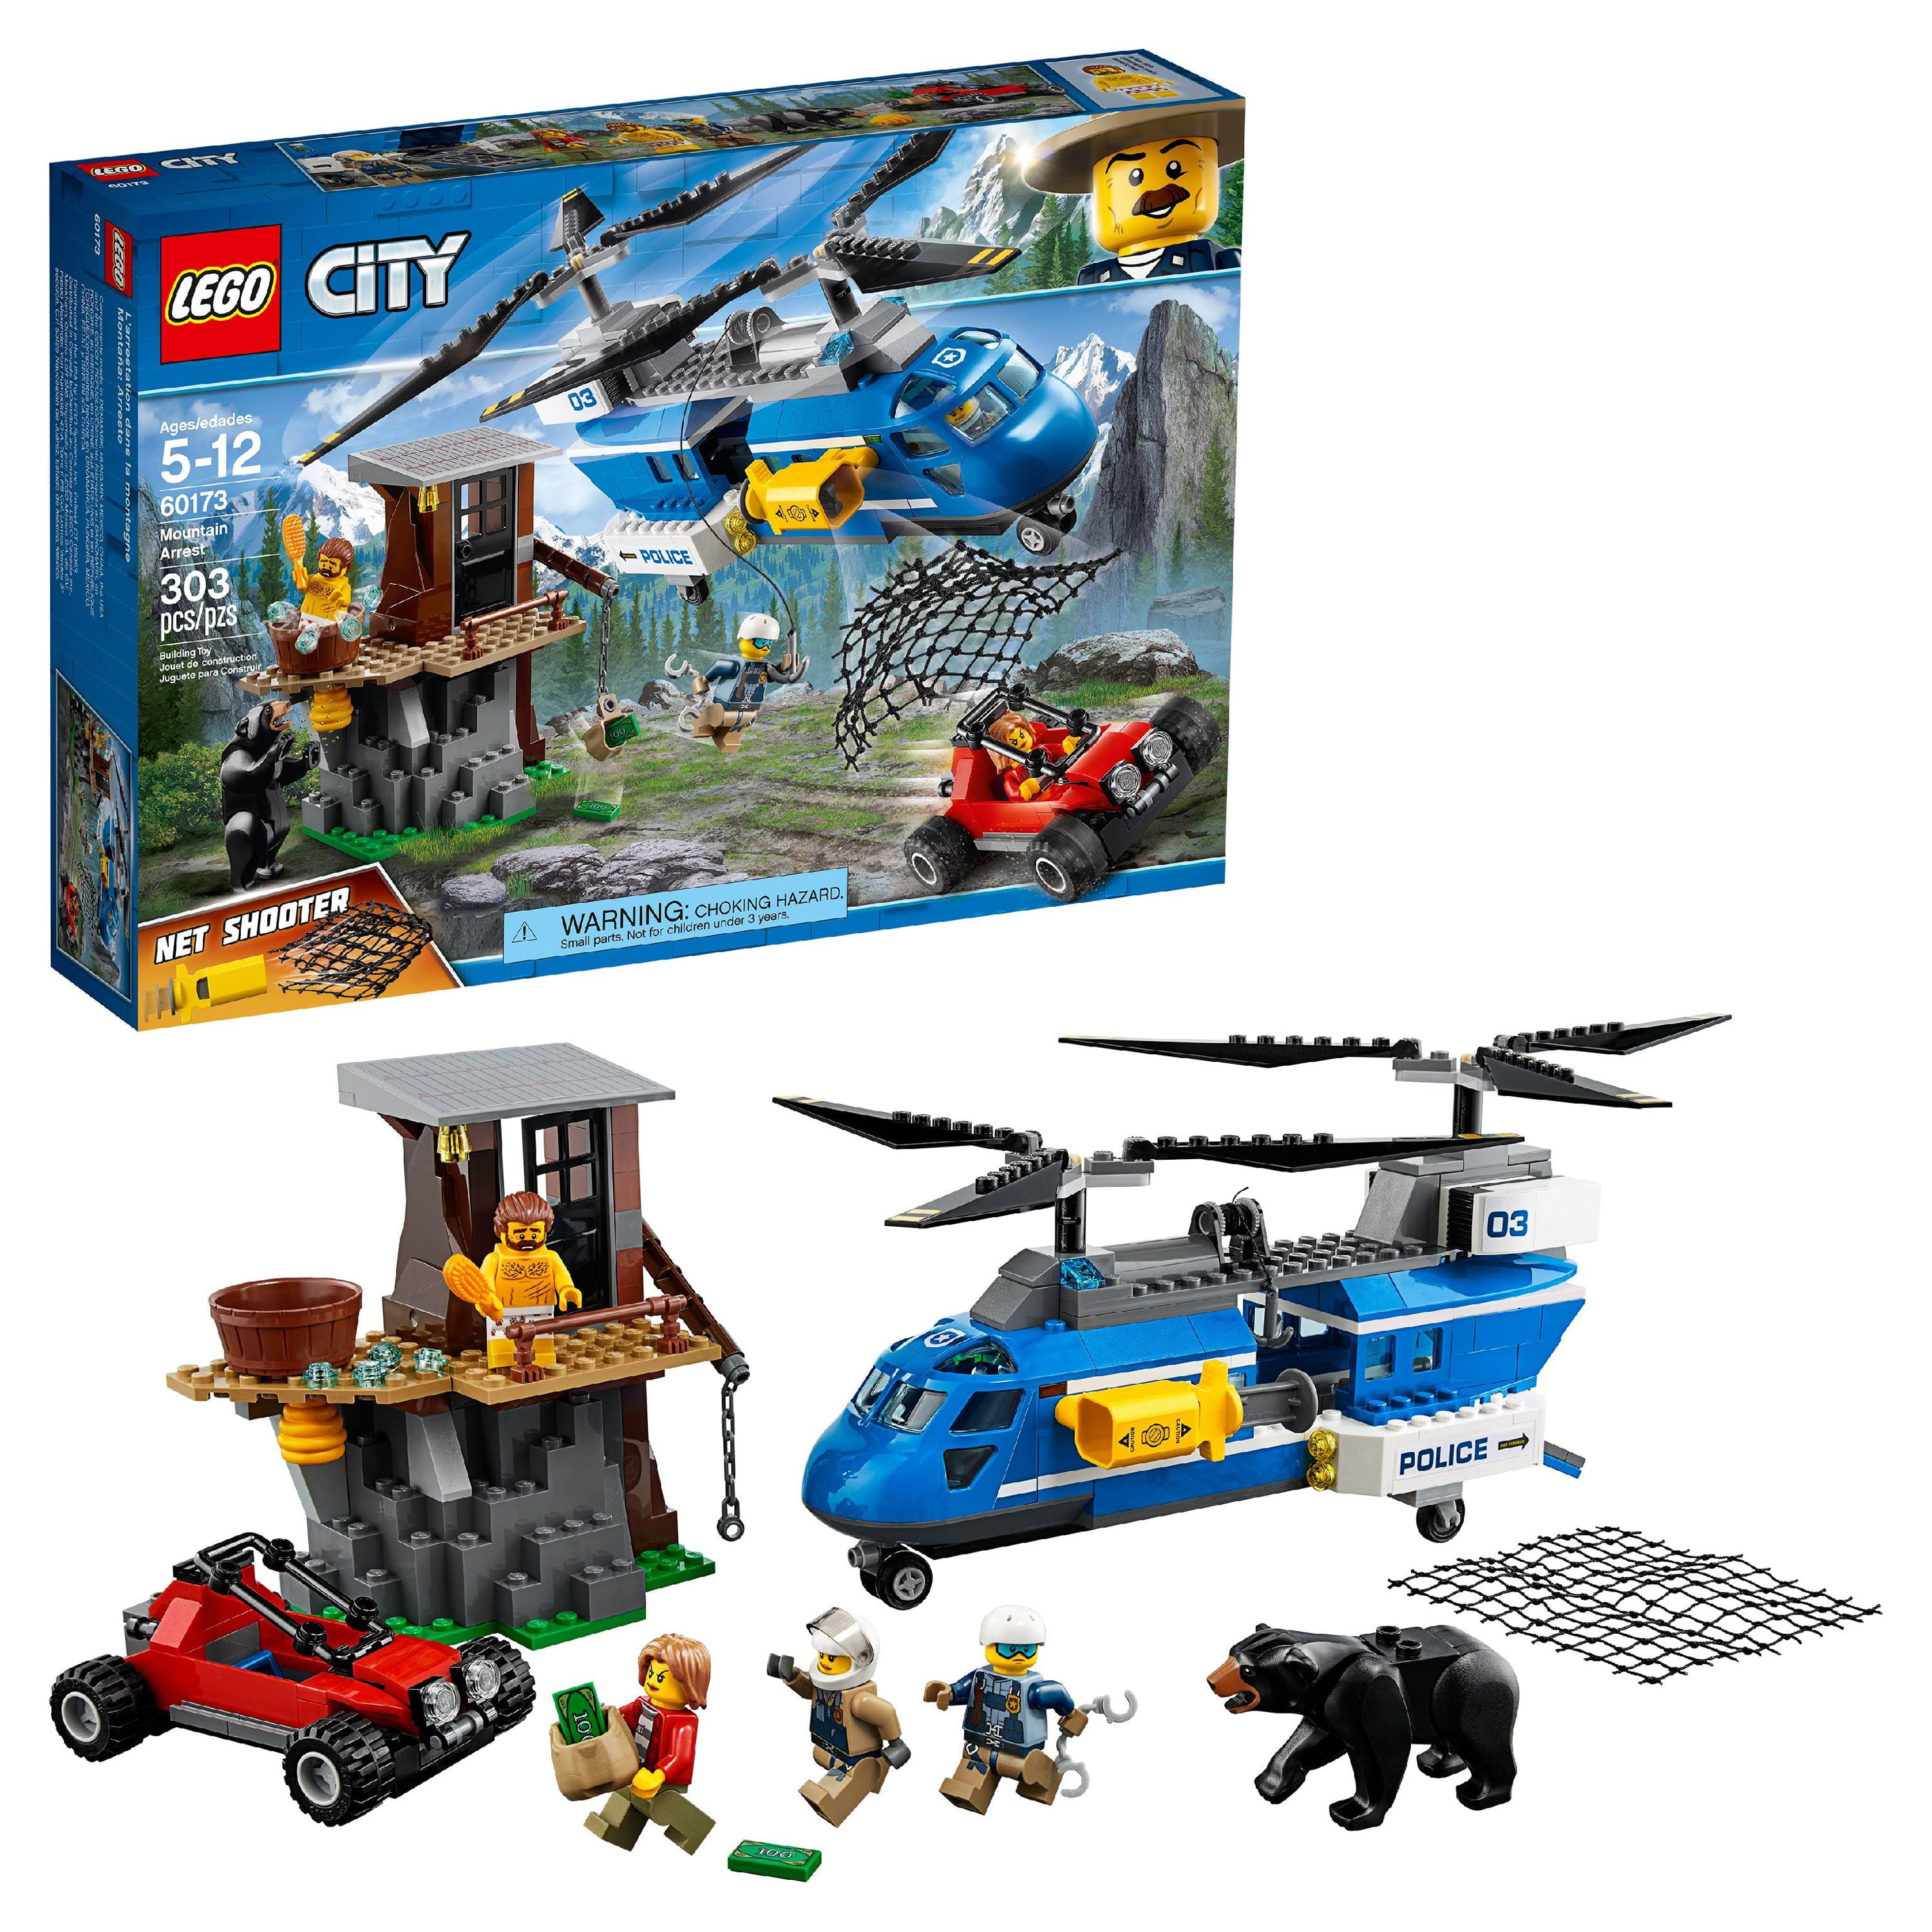 LEGO City Mountain Arrest 60173 Building Set (303 Pieces